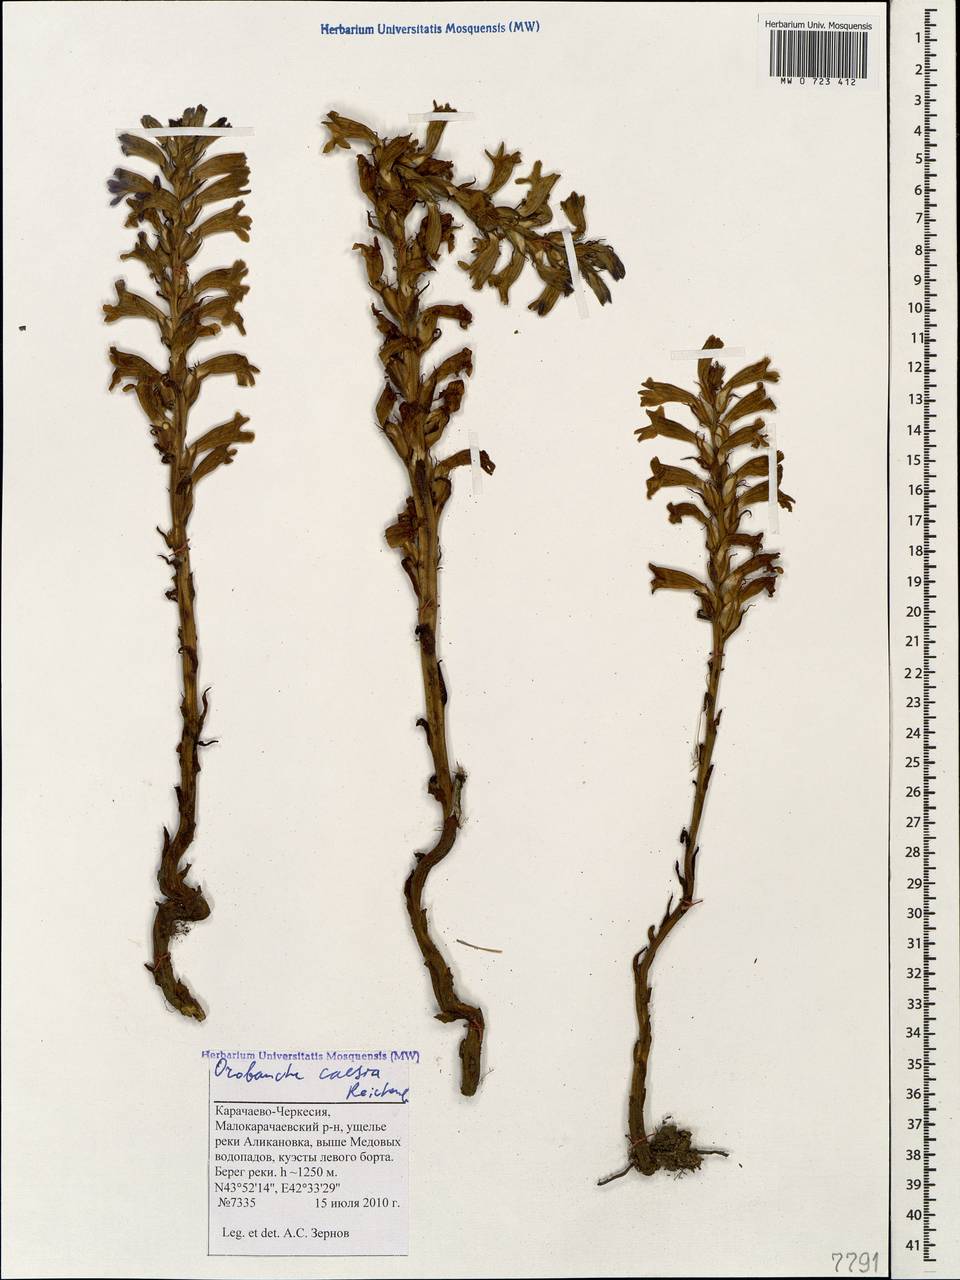 Phelipanche caesia (Rchb.) Soják, Caucasus, Stavropol Krai, Karachay-Cherkessia & Kabardino-Balkaria (K1b) (Russia)